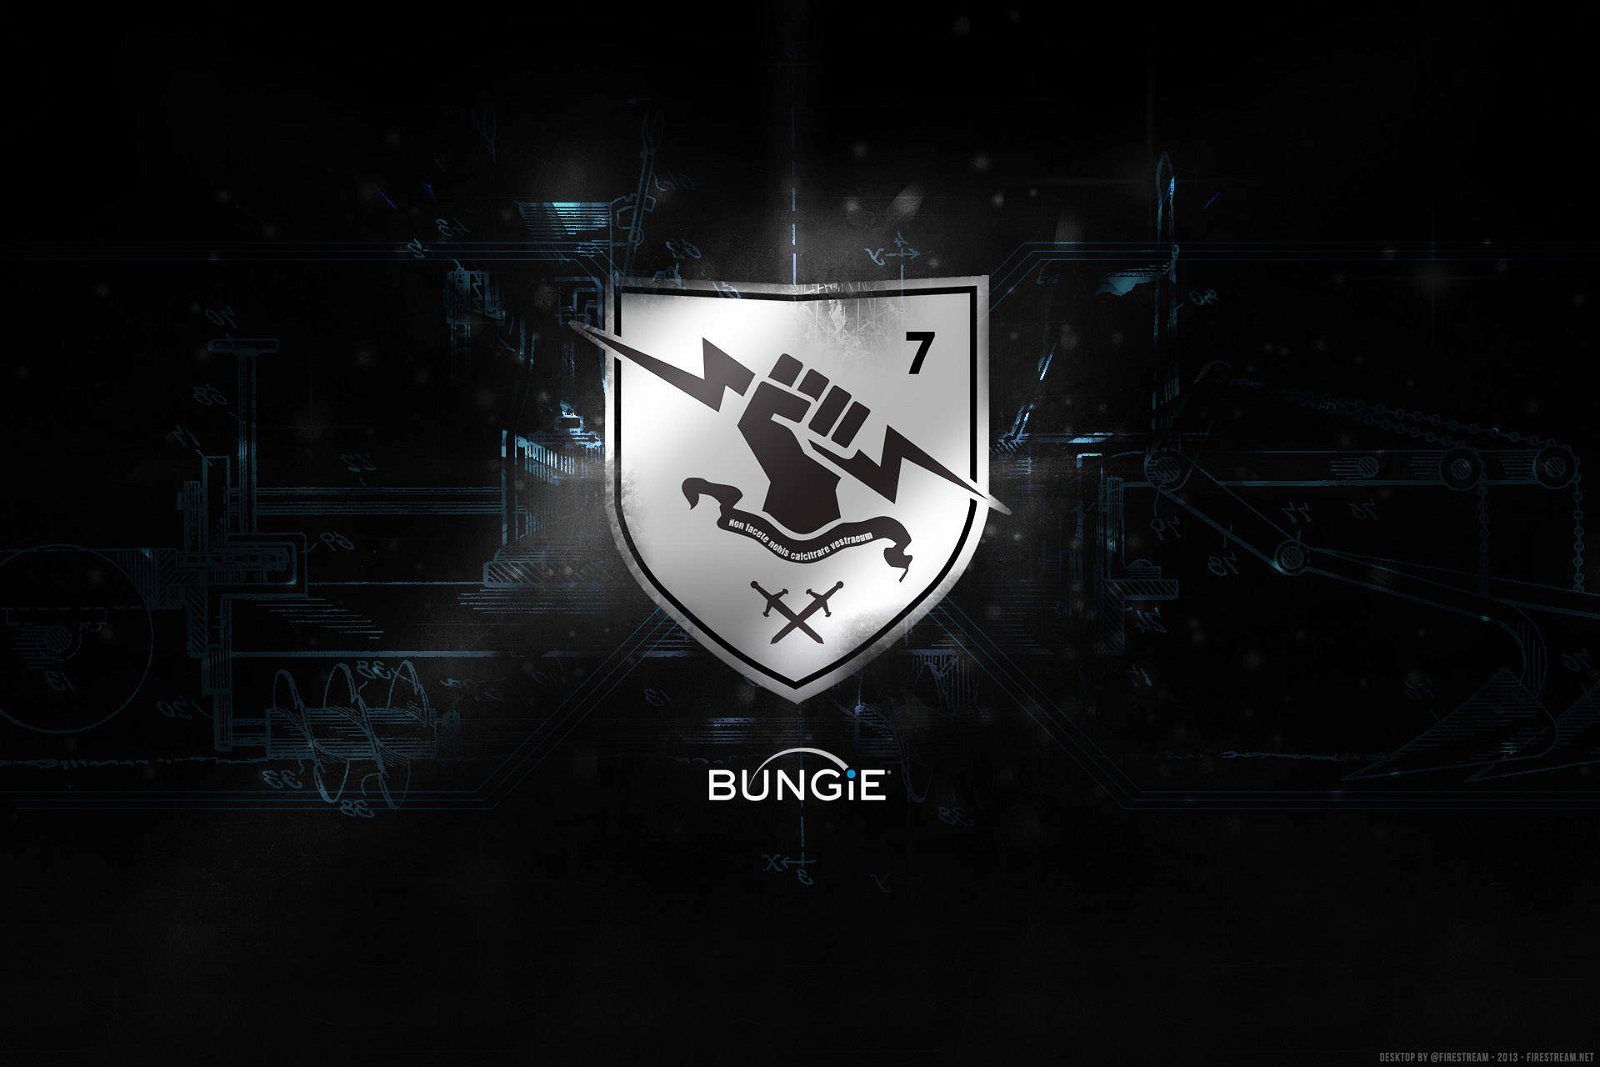 Immagine di PlayStation, ufficializzata l’acquisizione di Bungie